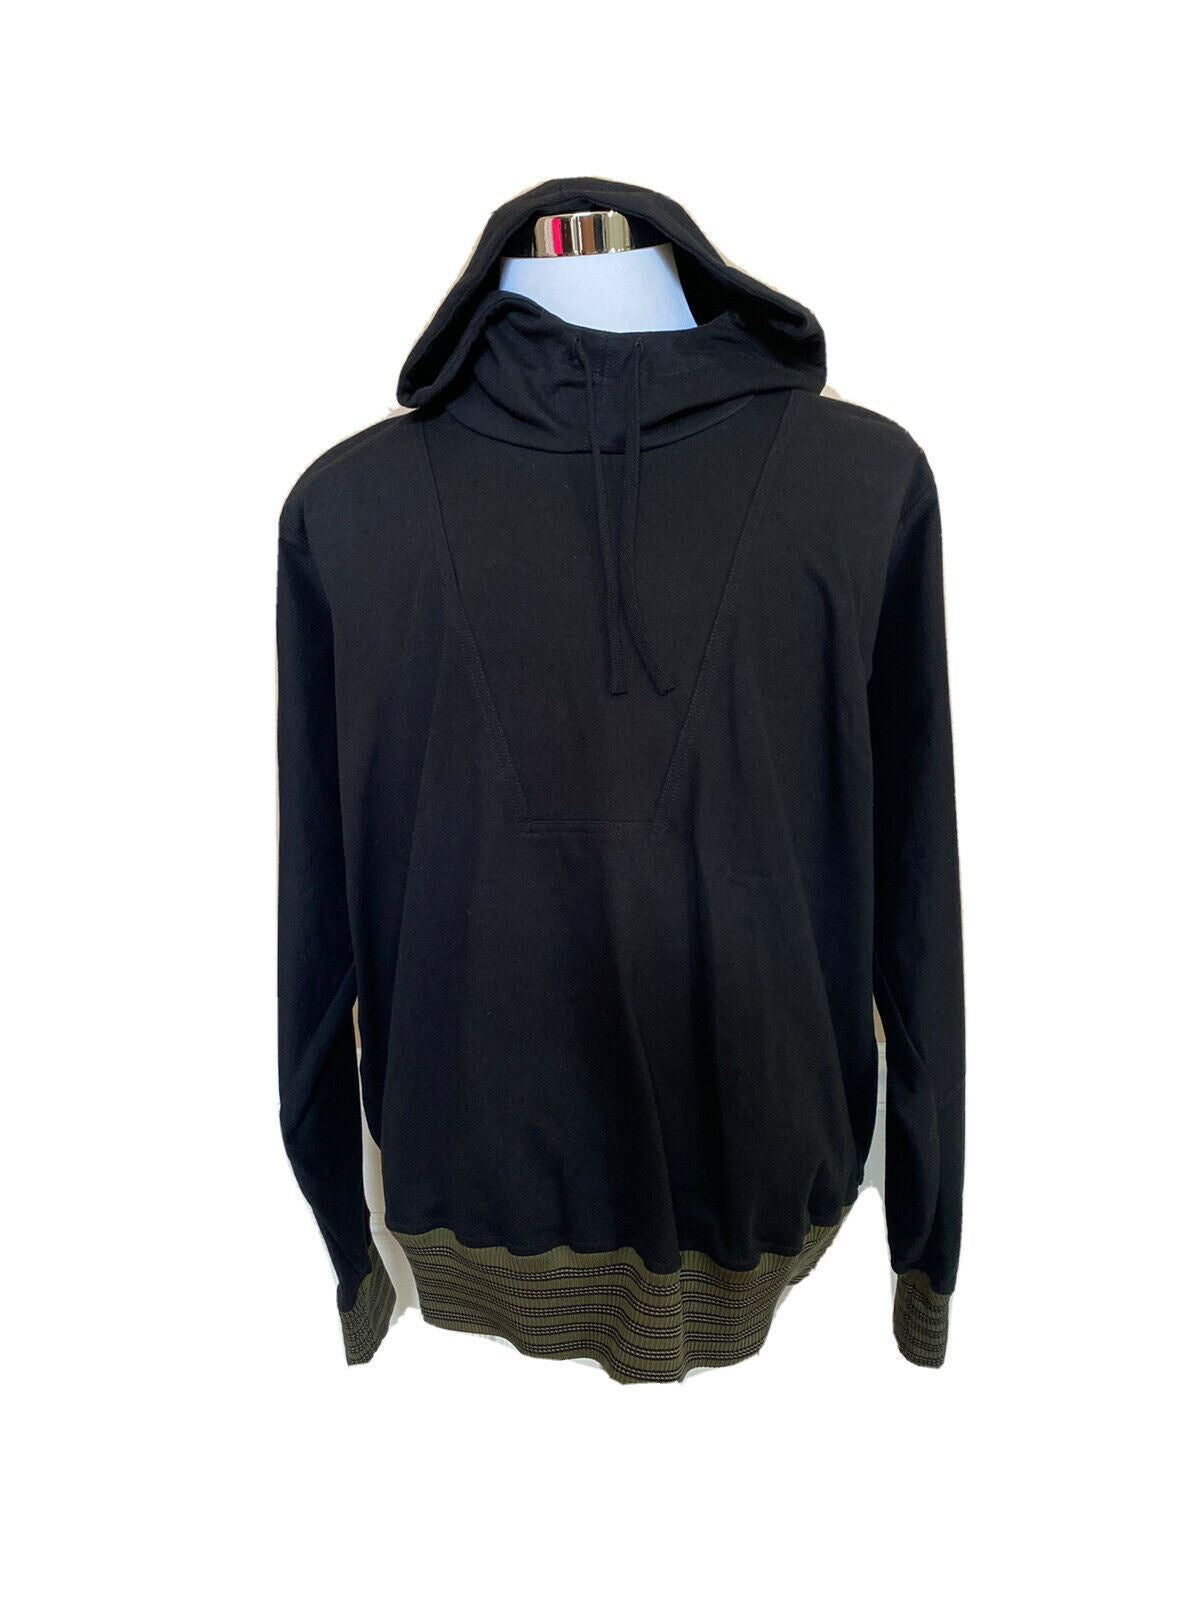 NWT $850 Bottega Veneta Sweater with Hoodie Black 48 US (58 Eu) 567154